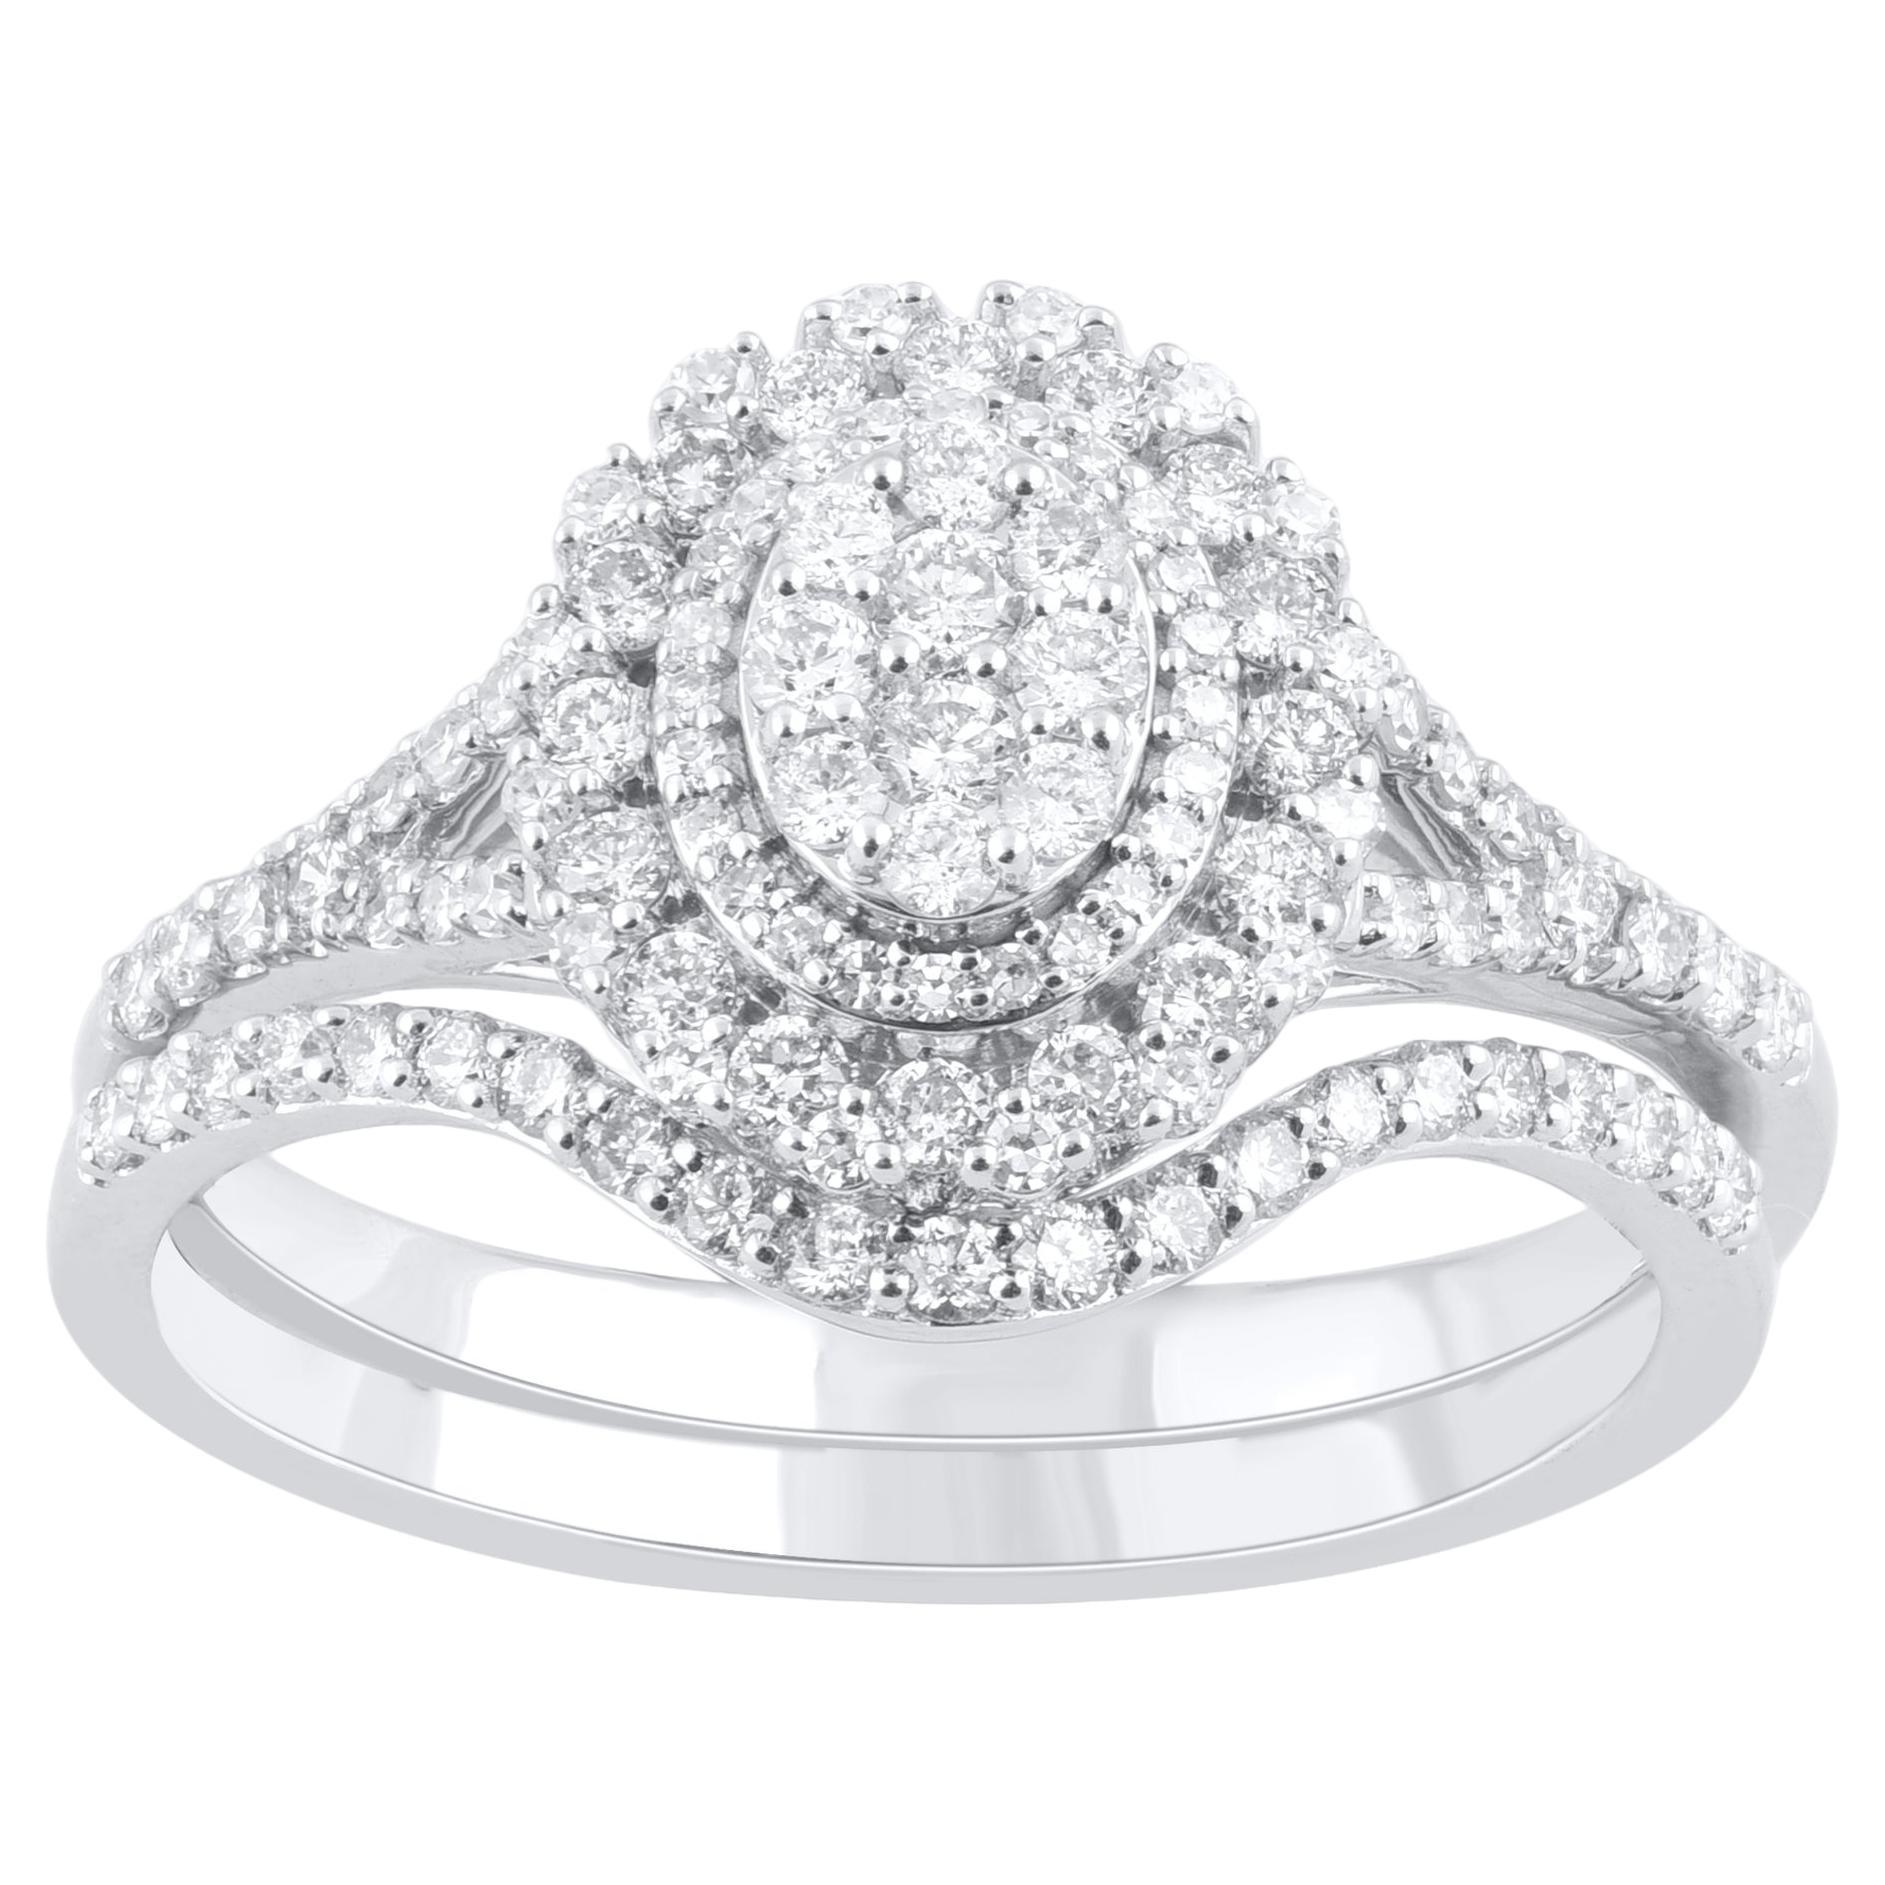 TJD 0.65 Carat Natural Round Cut Diamond 14 Karat White Gold Bridal Ring Set For Sale